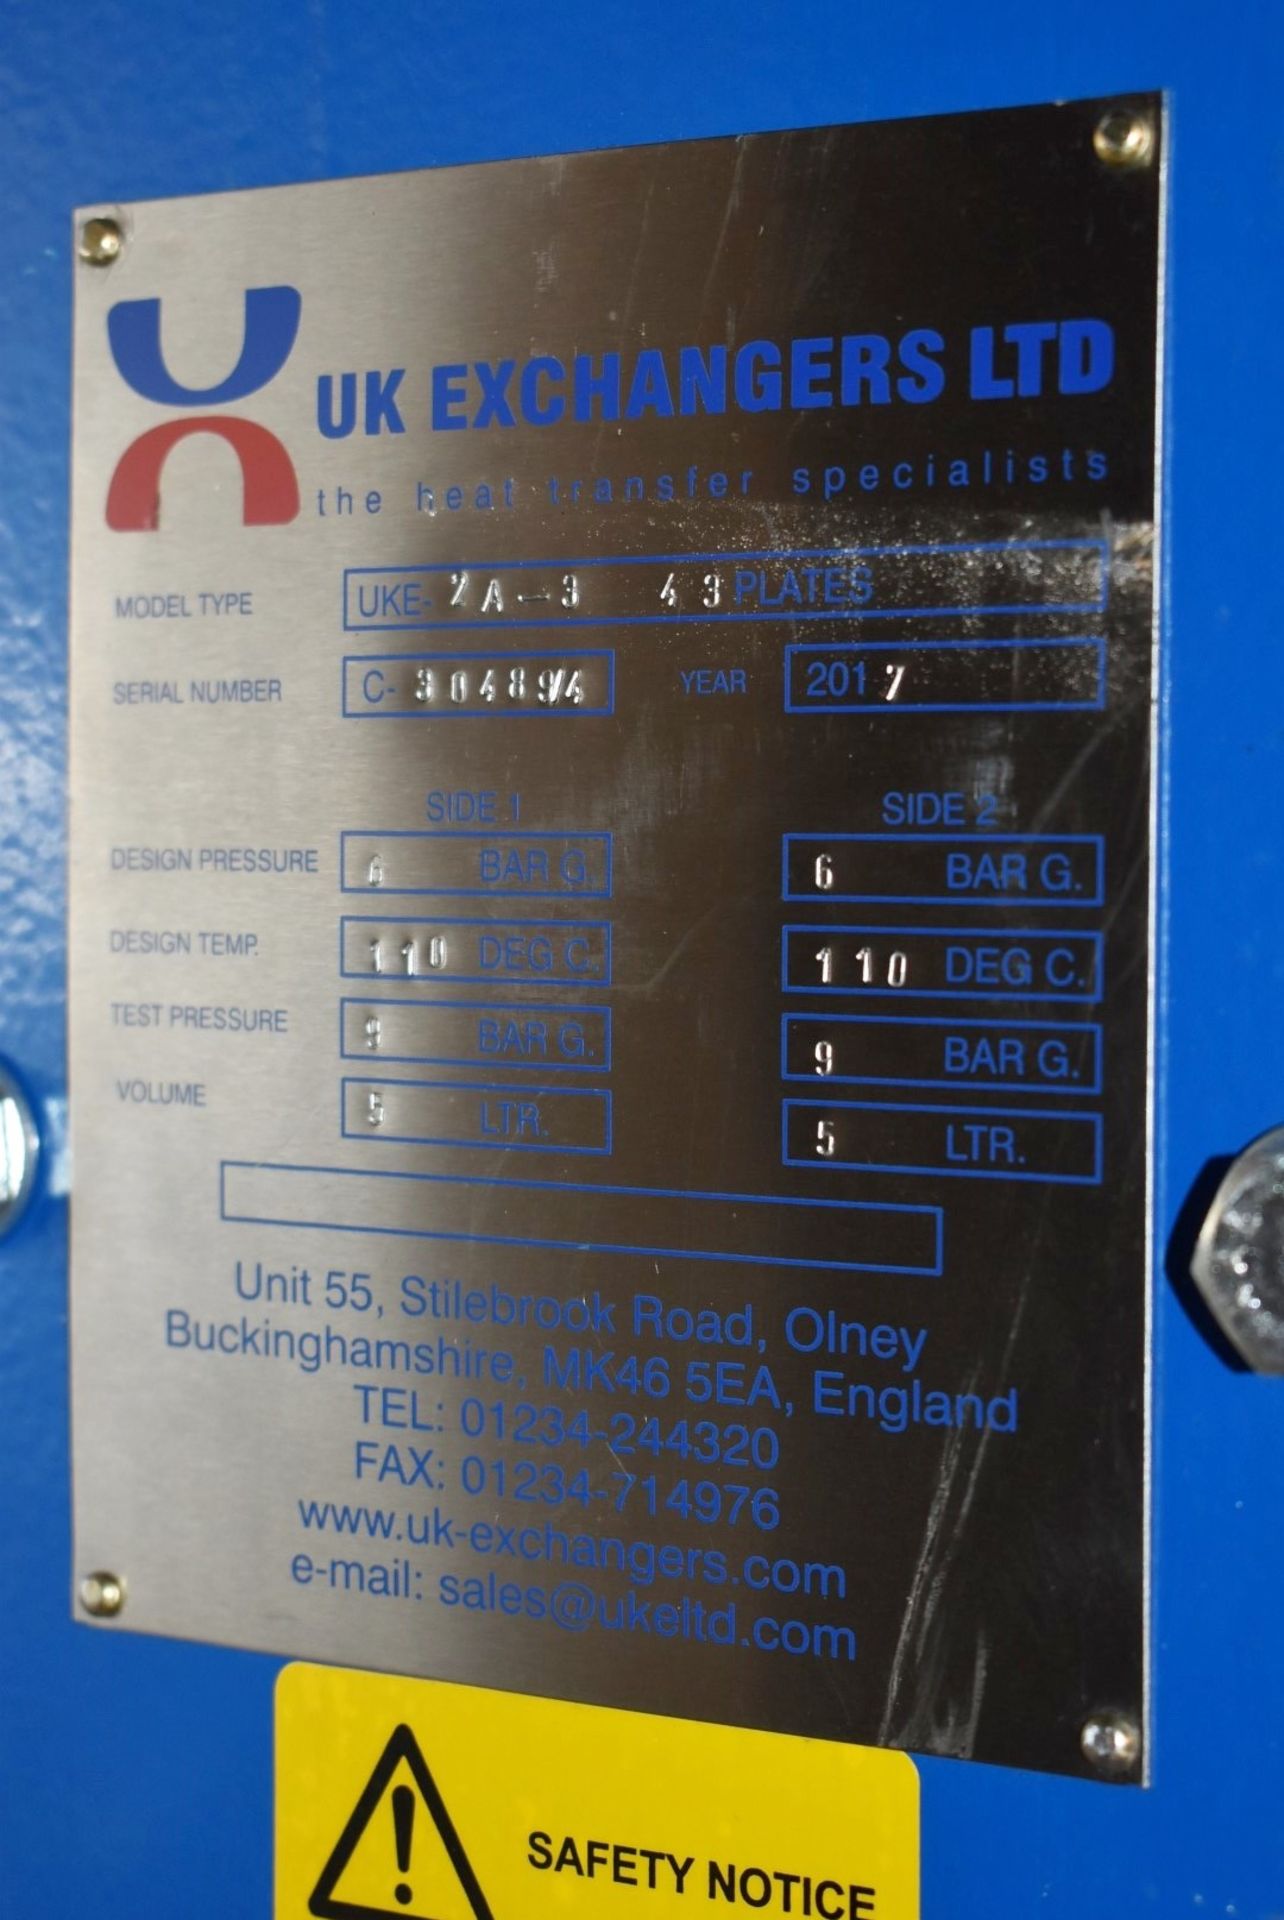 1 x UK Exchangers Gasket Plate Heat Exchanger - Type UKE 2A-3 4 3 Plates - Year: 2017 - Unused Stock - Image 12 of 12